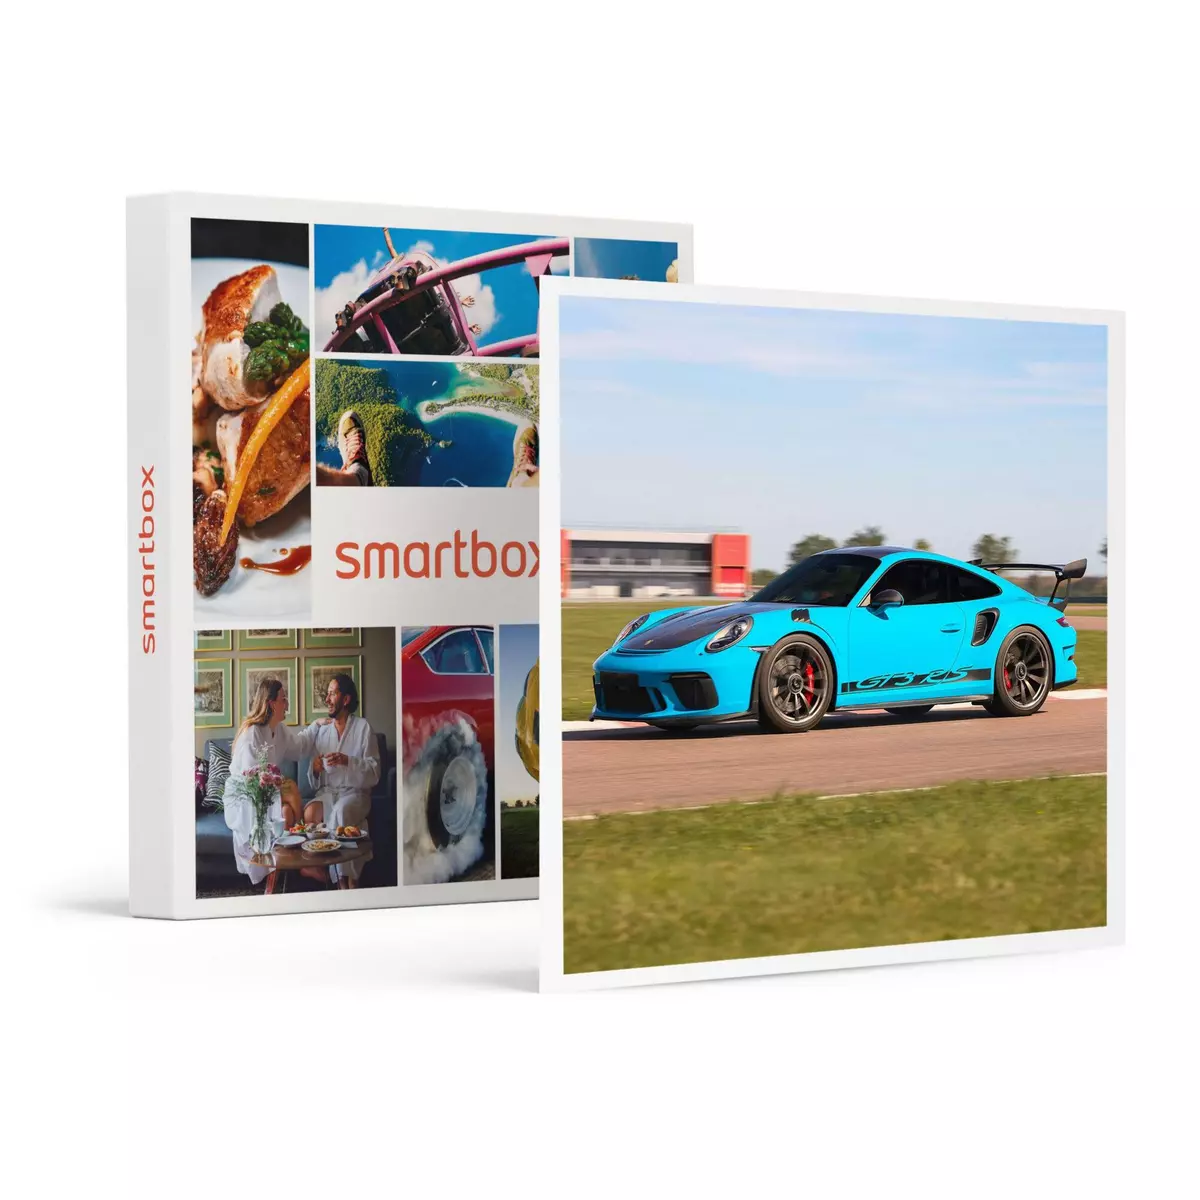 Smartbox Stage de pilotage : 2 tours sur le circuit de La Ferté-Gaucher en Porsche 991 GT3 RS - Coffret Cadeau Sport & Aventure